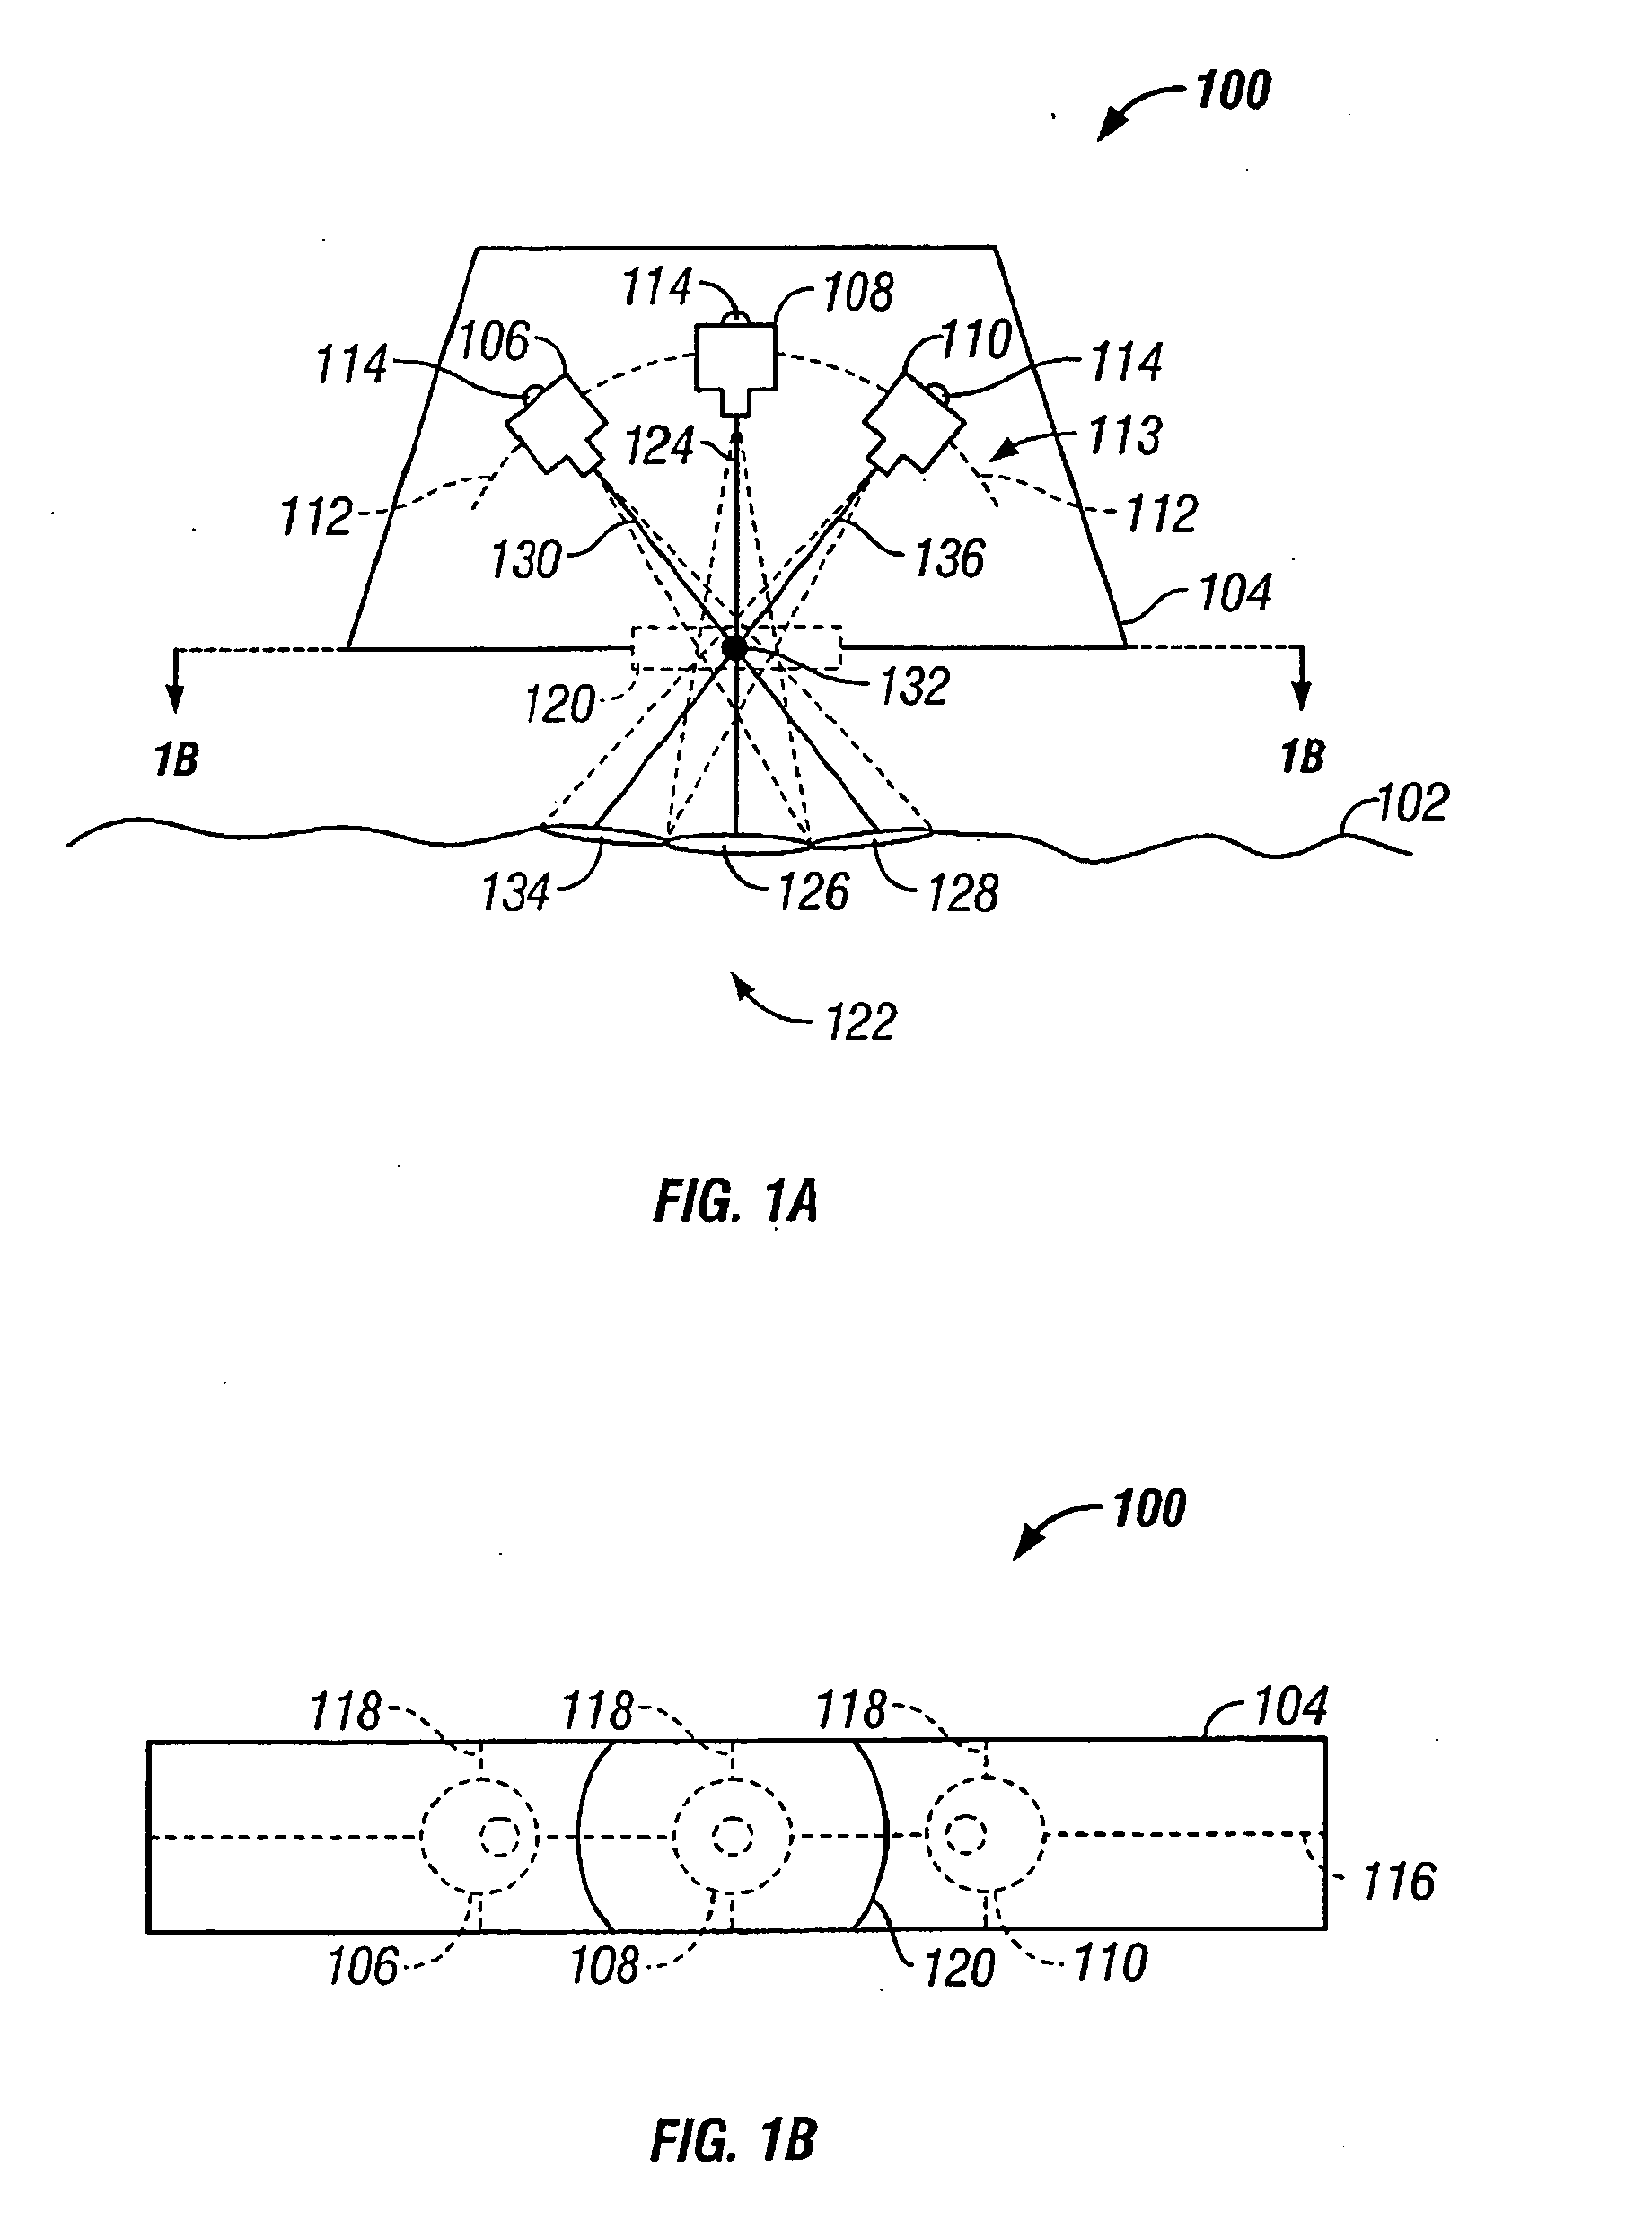 Retinal concave array compound camera system